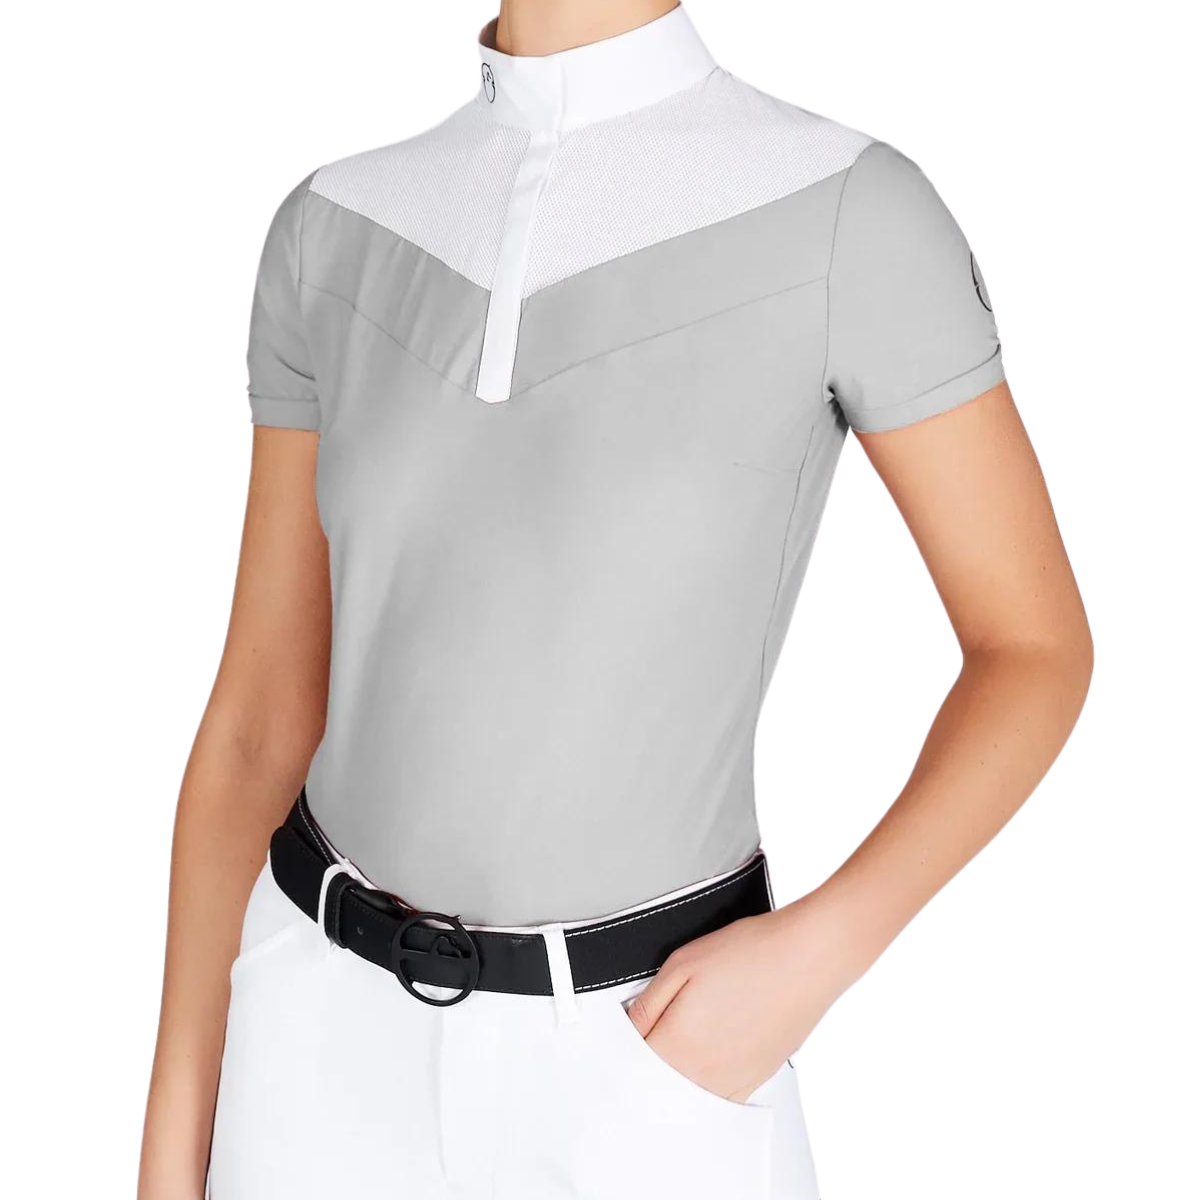 Vestrum Simeri Short Sleeve Show Shirt in Light Grey/White - Women's Small